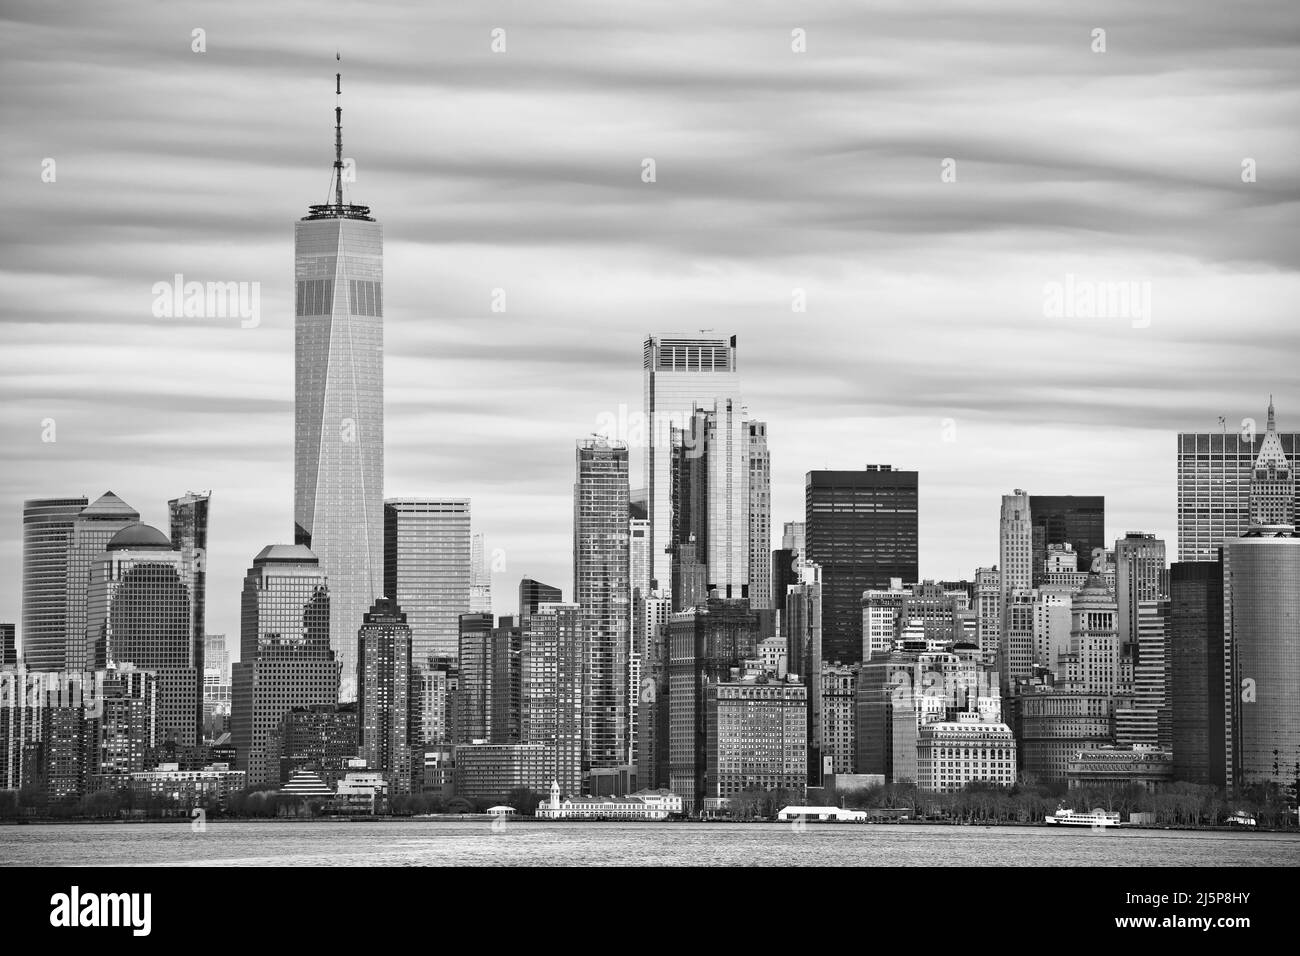 Vue en noir et blanc sur les gratte-ciel du centre-ville de New York, États-Unis d'Amérique Banque D'Images